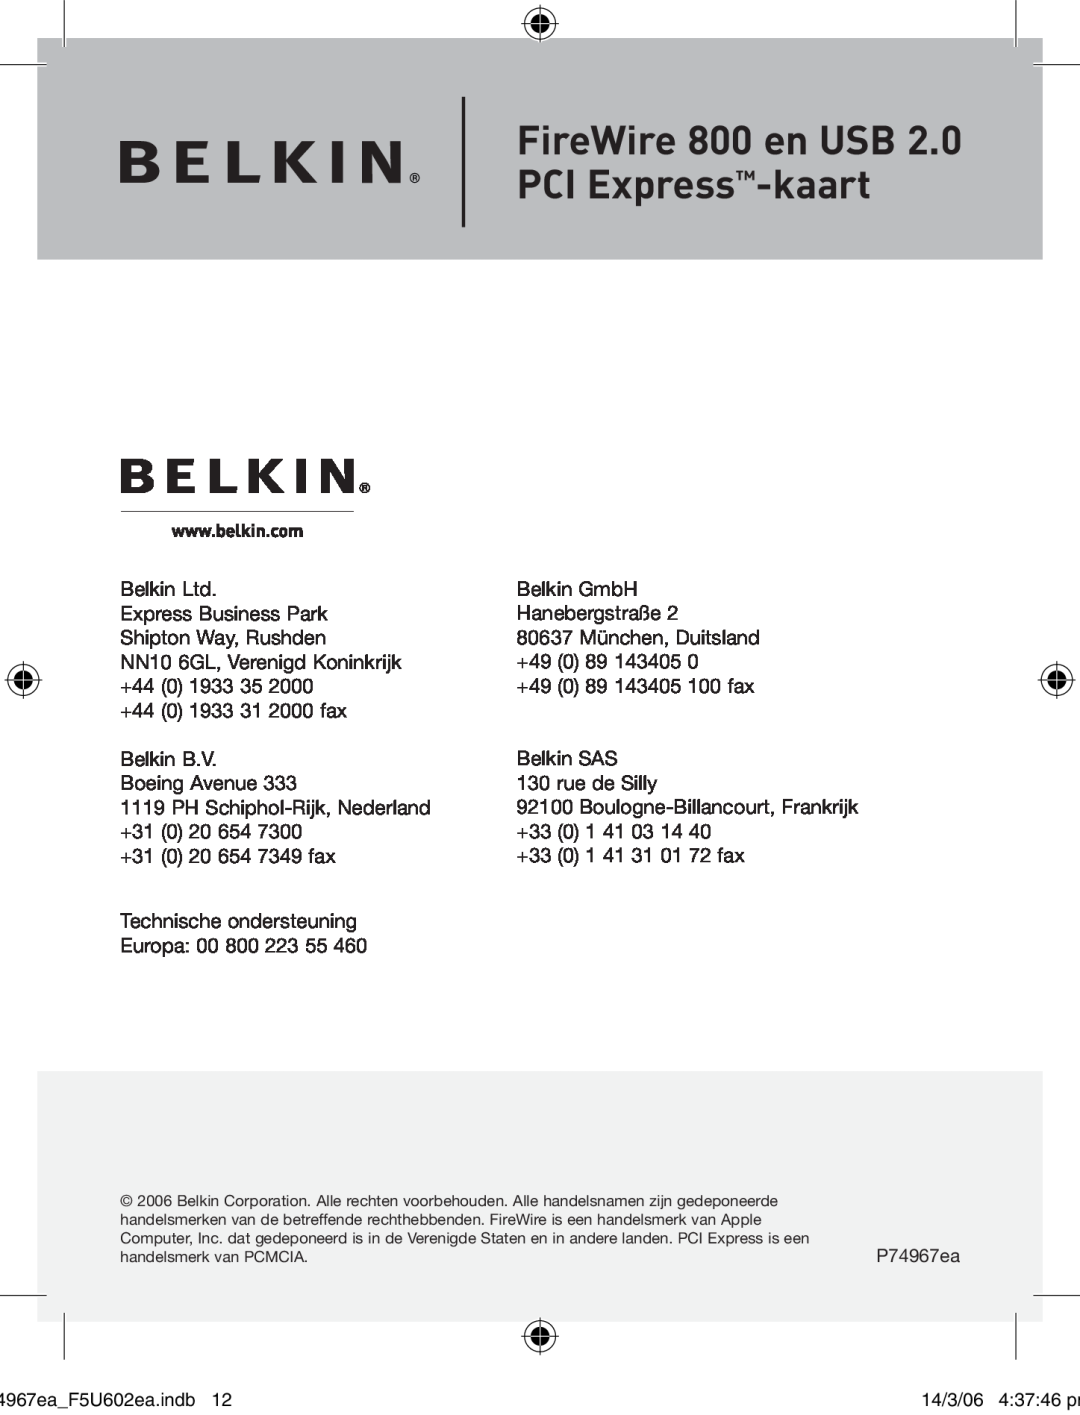 Belkin F5U602EA user manual FireWire 800 en USB PCI Express-kaart, handelsmerk van PCMCIA 